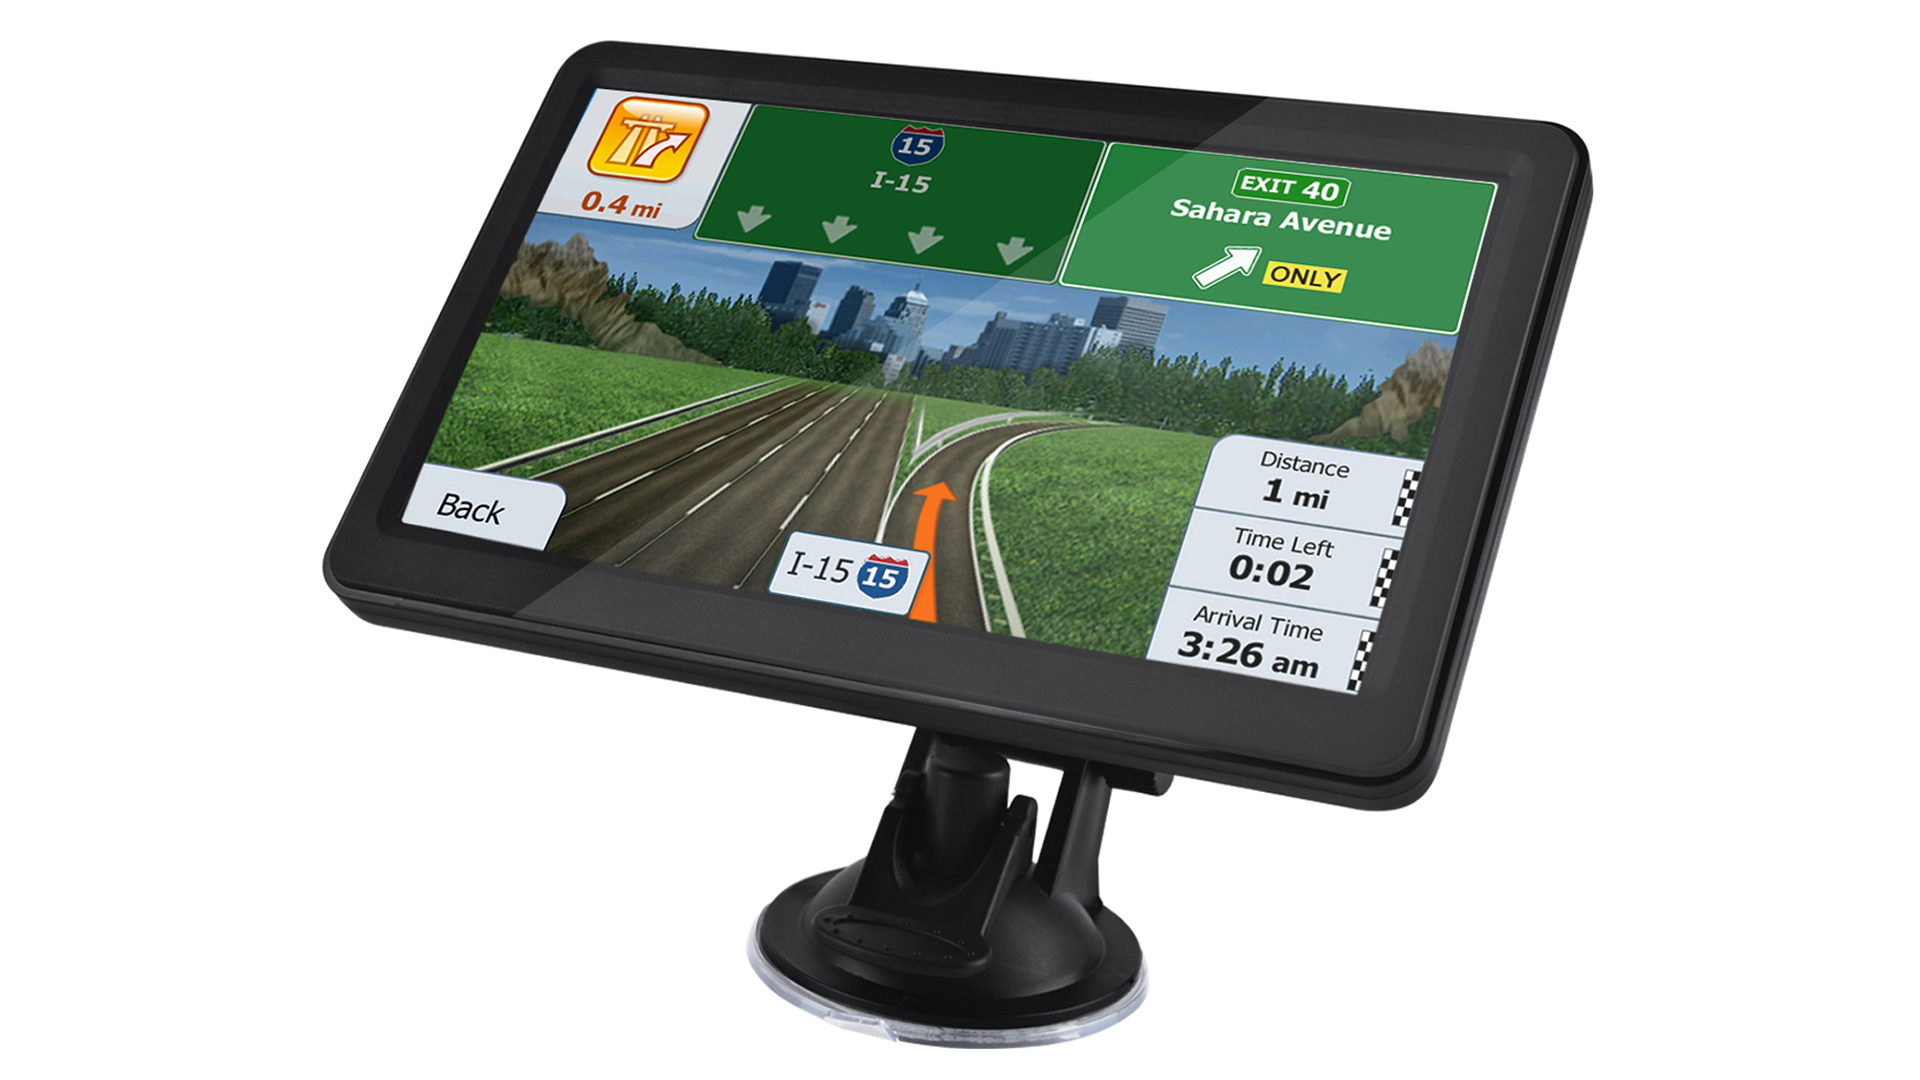 مقدمة إلى جهاز ملاح GPS للسيارة بشاشة تعمل باللمس 7 تي أف تي عالي الجودة للبيع بالجملة أفضل شركة للإلكترونيات الرقمية ، المحدودة بشكل أفضل